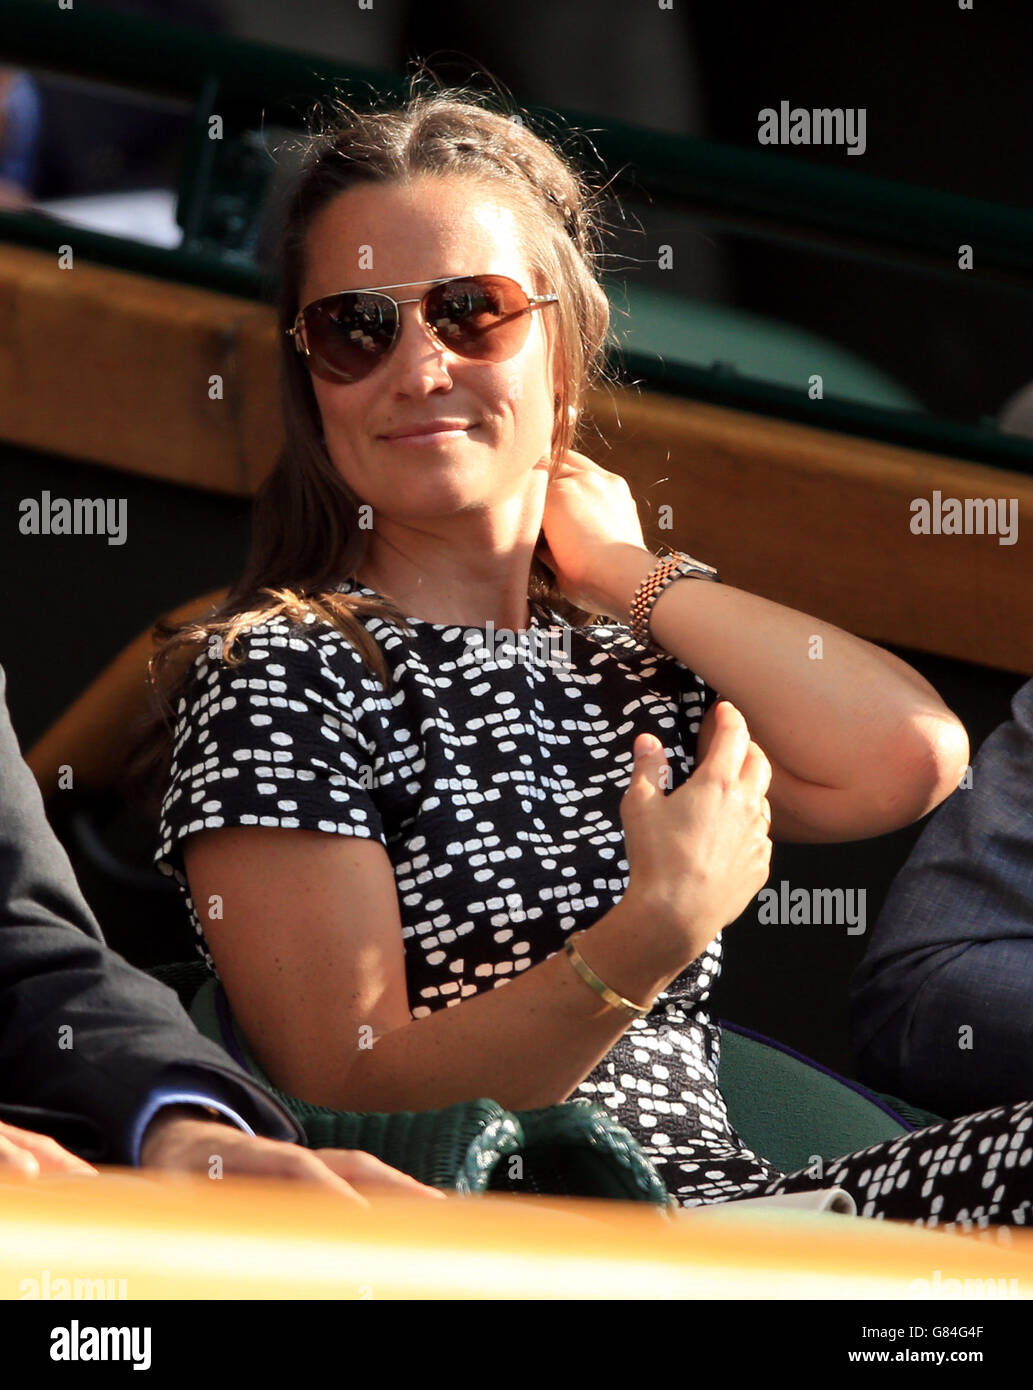 Pippa Middleton nella scatola reale durante il giorno dieci dei campionati di Wimbledon all'All England Lawn Tennis and Croquet Club, Wimbledon. Data foto: Giovedì 9 luglio 2015. Vedi la storia del PA TENNIS Wimbledon. Il credito fotografico dovrebbe essere: Mike Egerton/PA Wire. Foto Stock